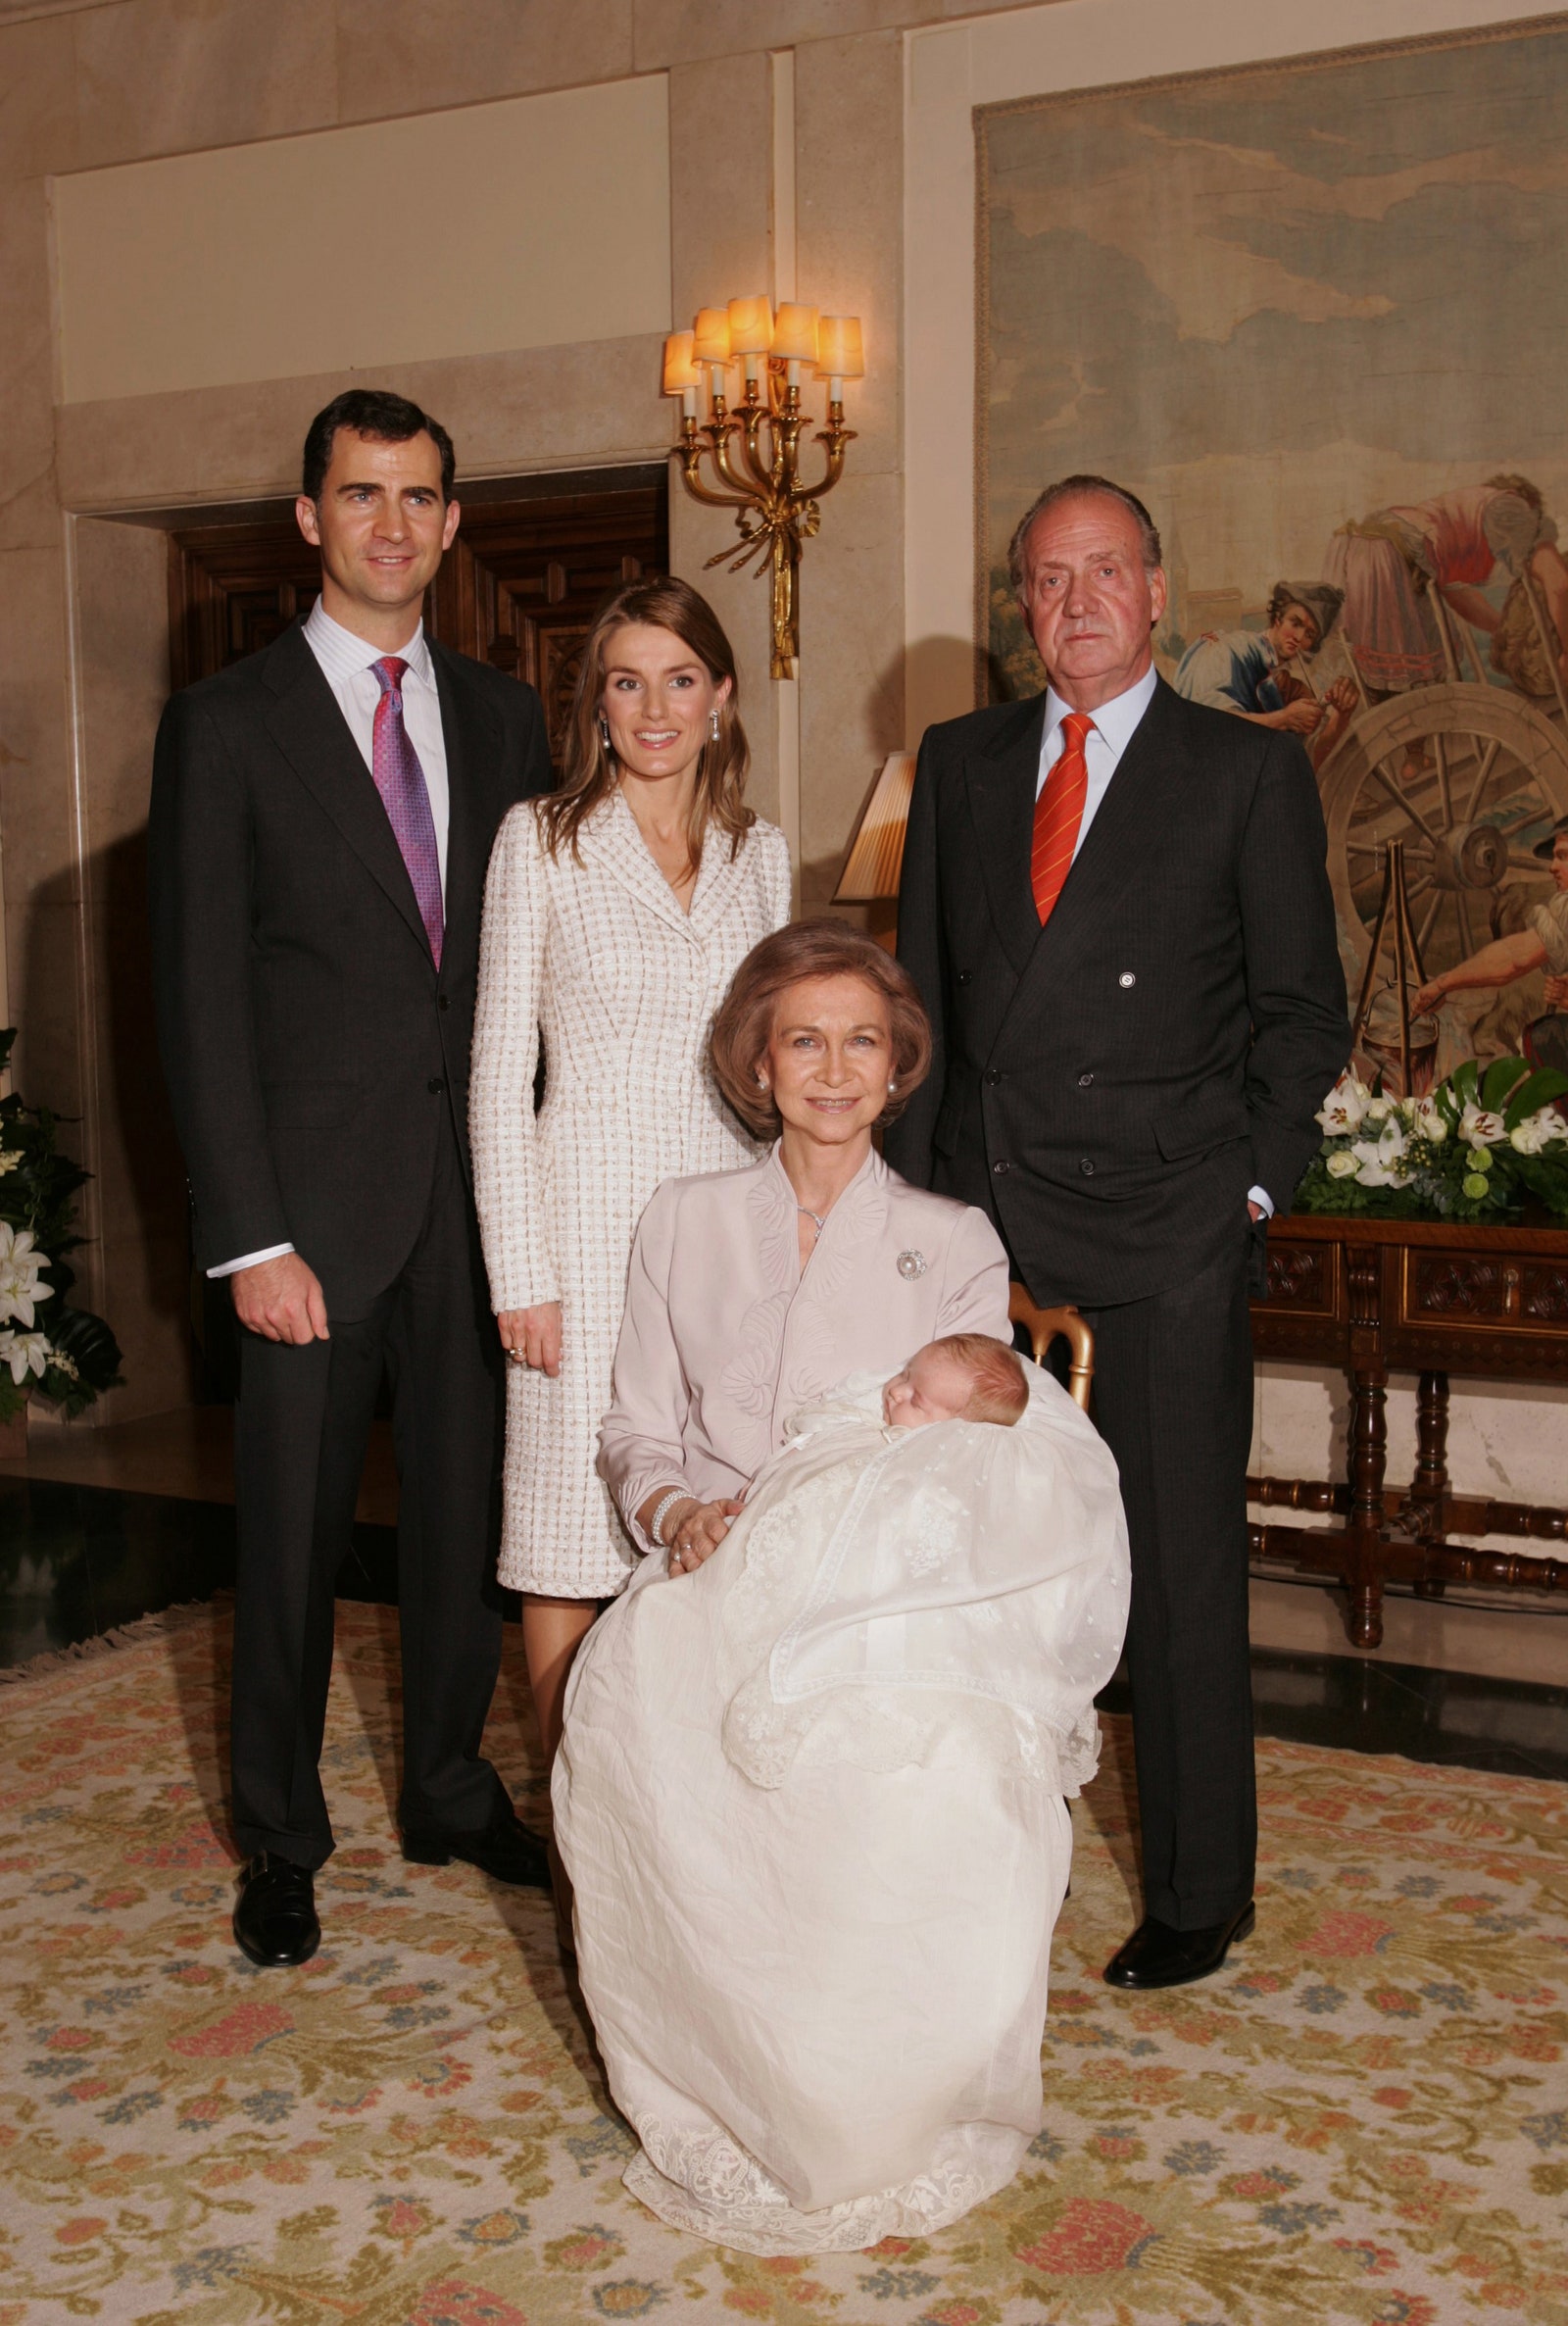 Принц Фелипе принцесса Летиция король Хуан Карлос и Мария Греческая с принцессой Леонор 2006 год